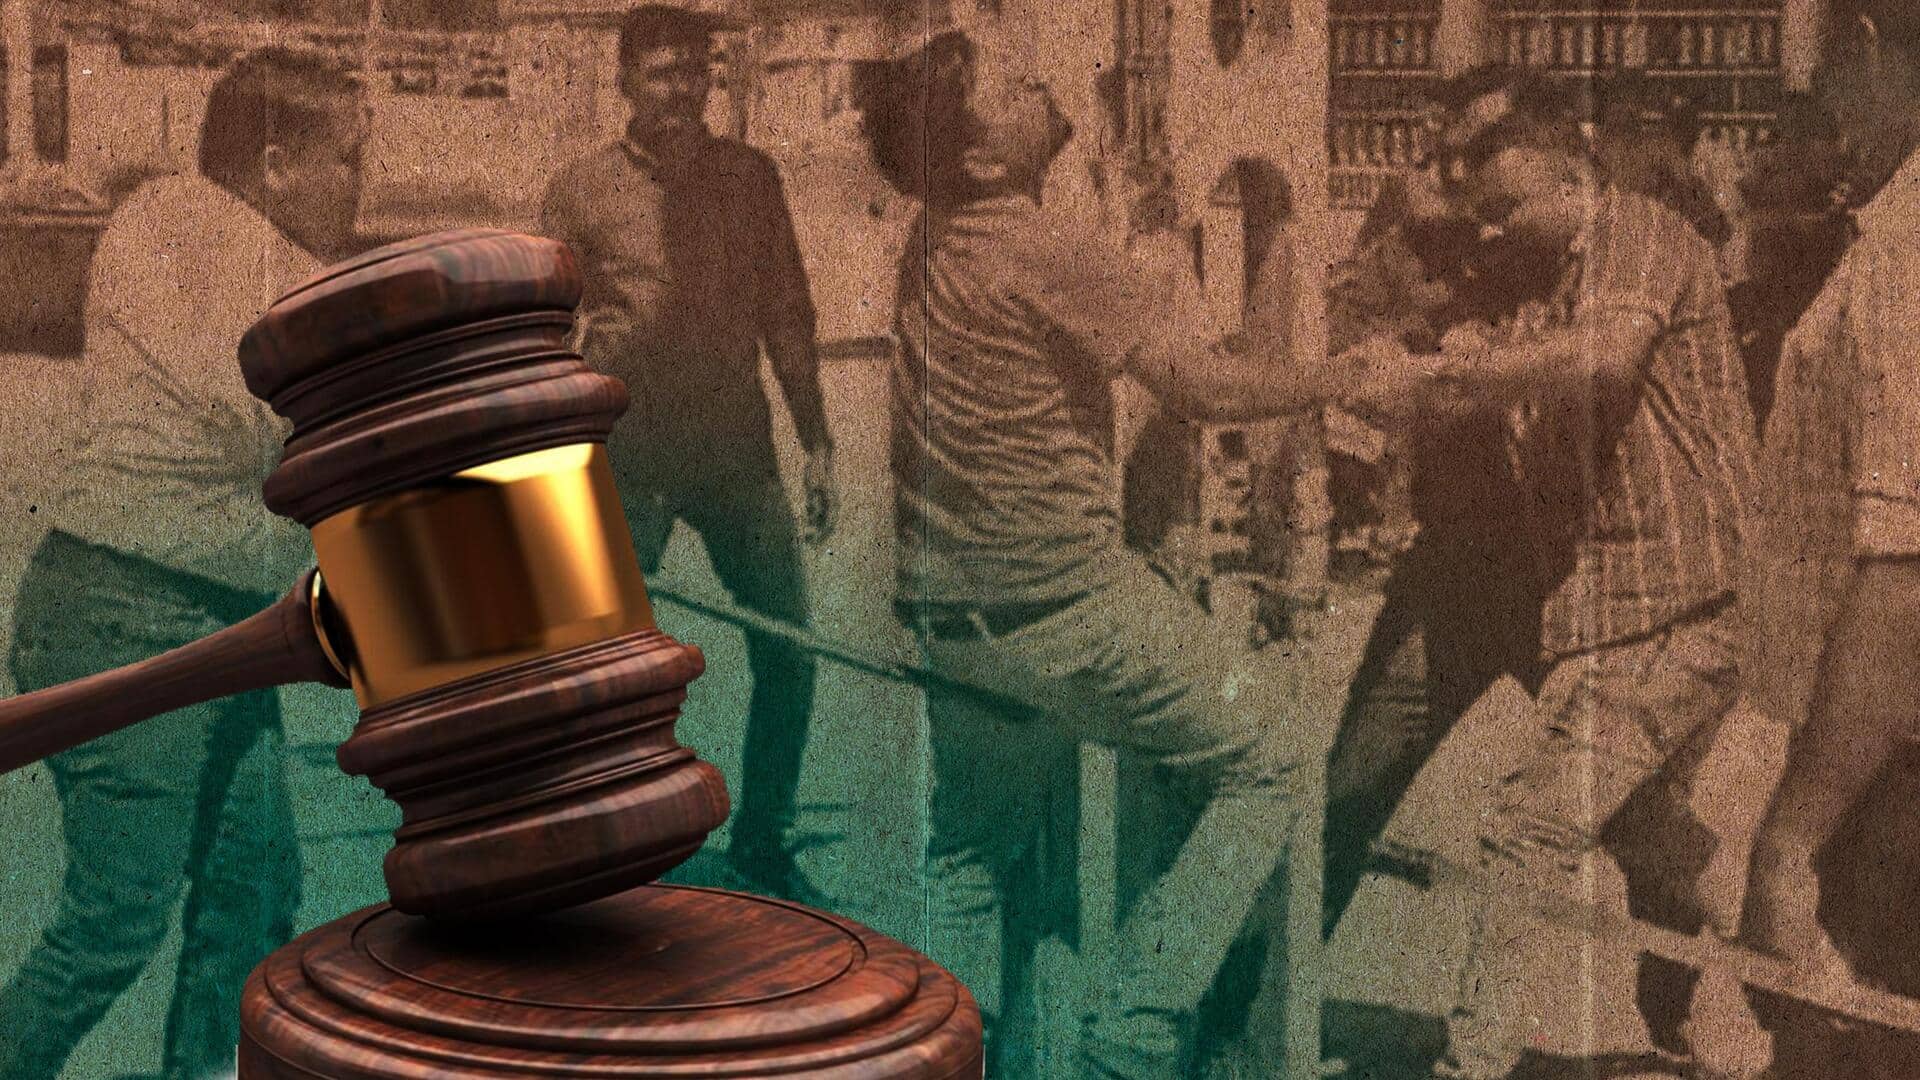 गुजरात: मुस्लिम युवकों को सार्वजनिक तौर पर पीटने के लिए 4 पुलिसकर्मियों को कारावास की सजा